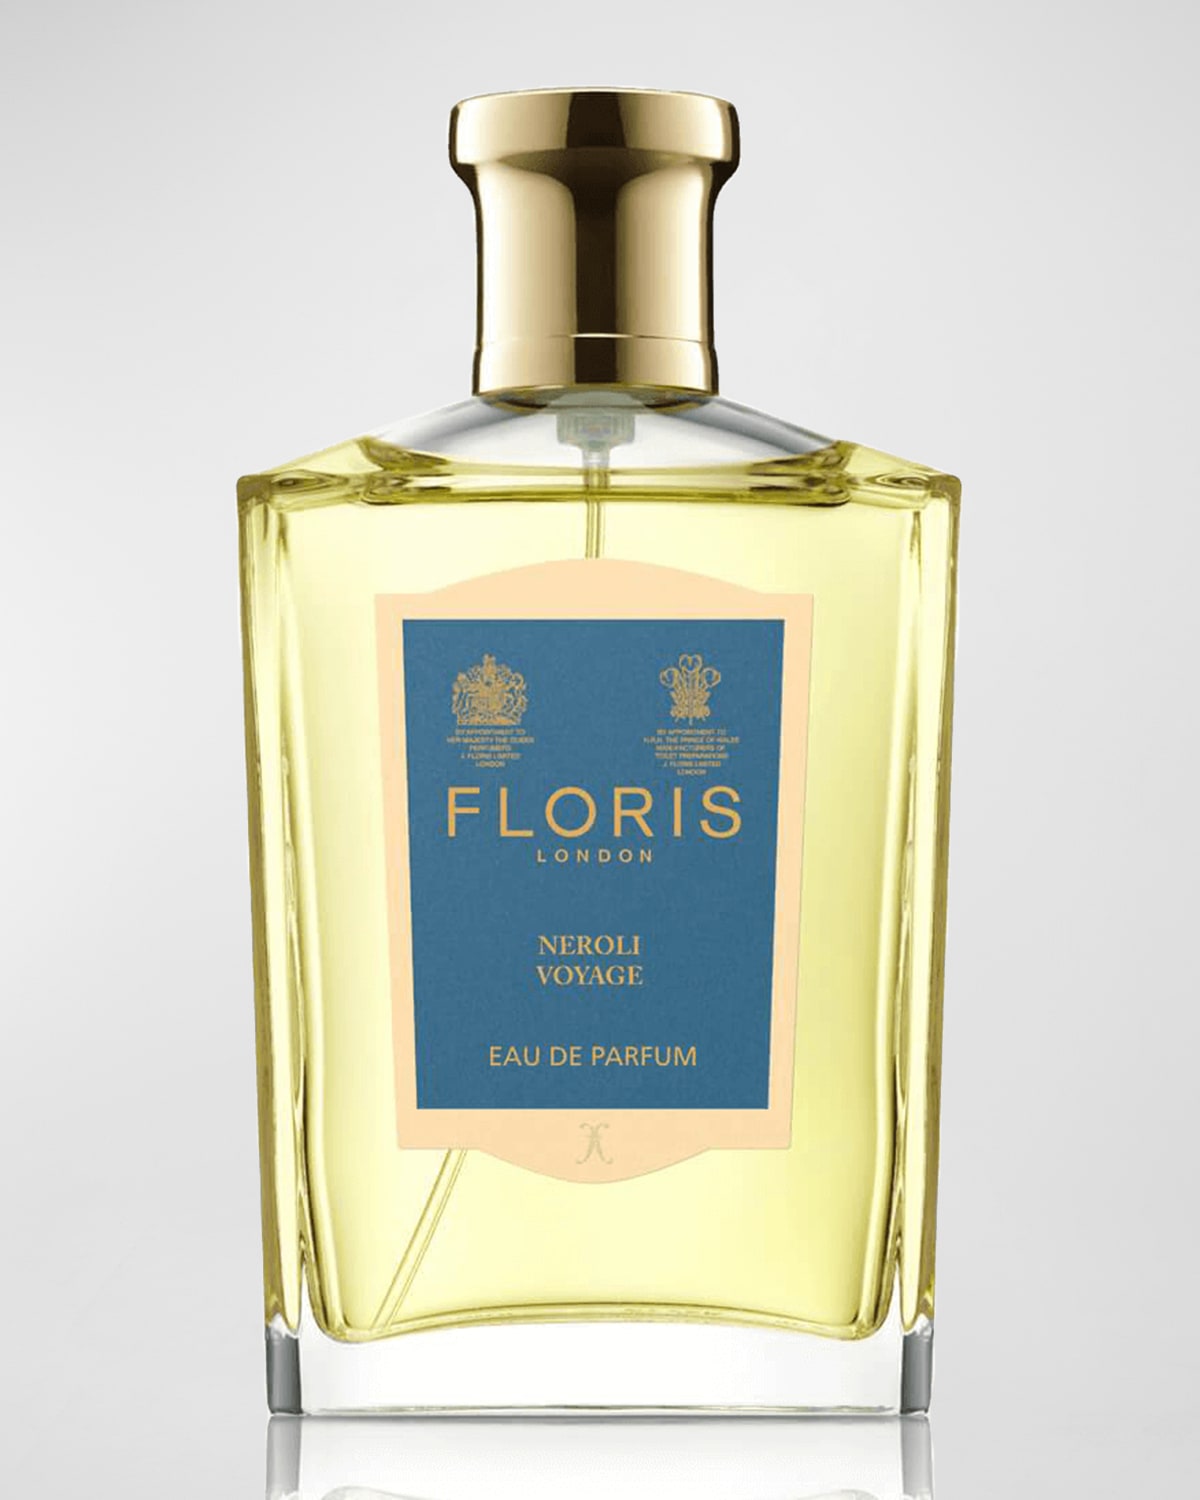 Floris London Neroli Voyage Eau de Parfum, 3.4 oz.